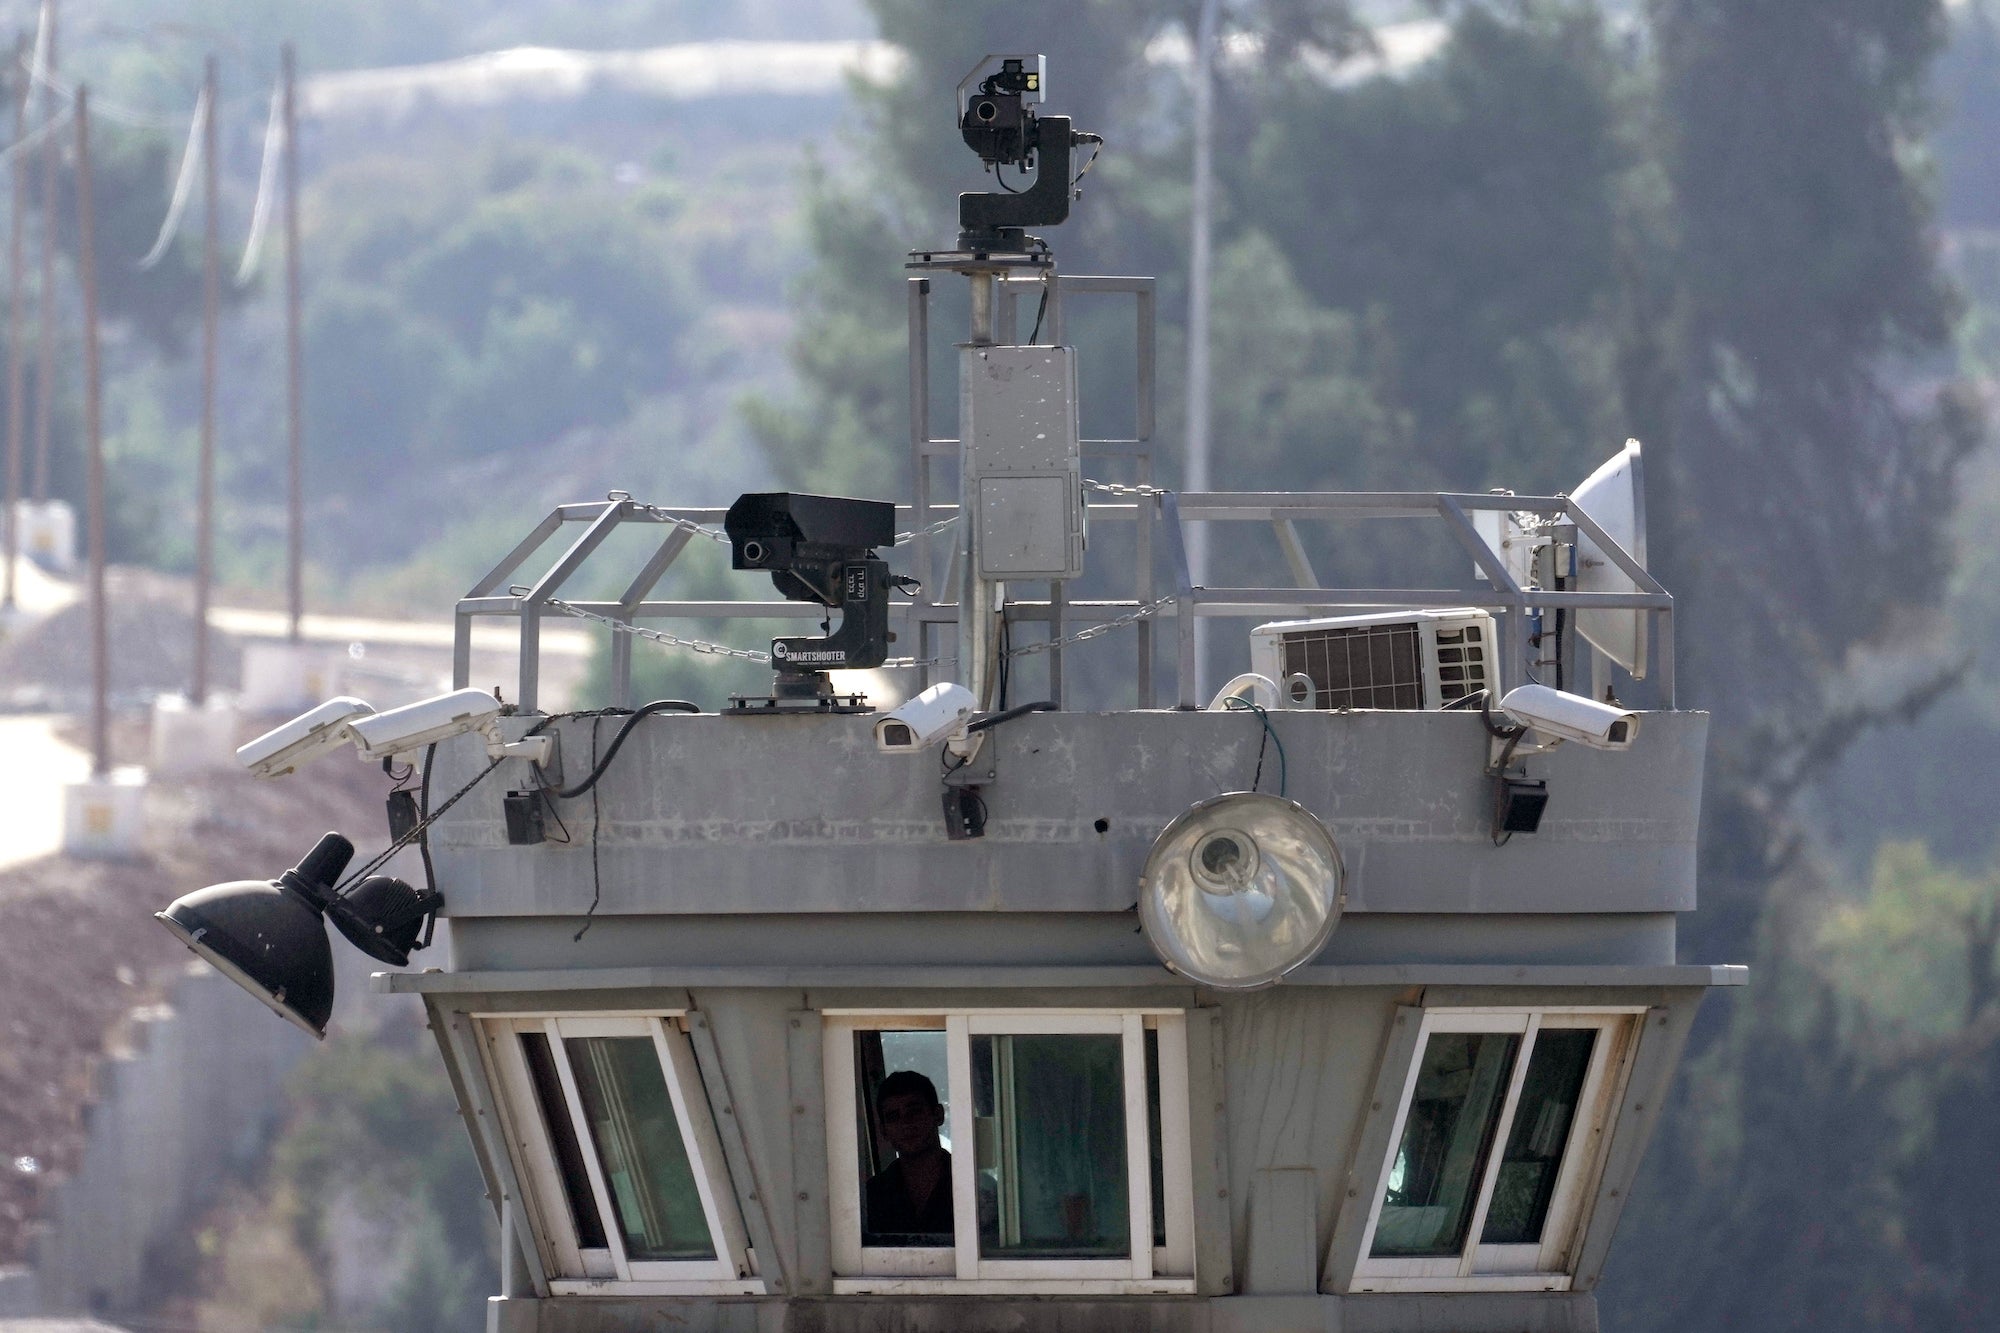 שני רובים מוצבים על מגדל שמירה לצד מצלמות מעקב המשקיפות על מחנה הפליטים אל-ערוב שבגדה המערבית הכבושה בידי ישראל, 6 באוקטובר 2022.